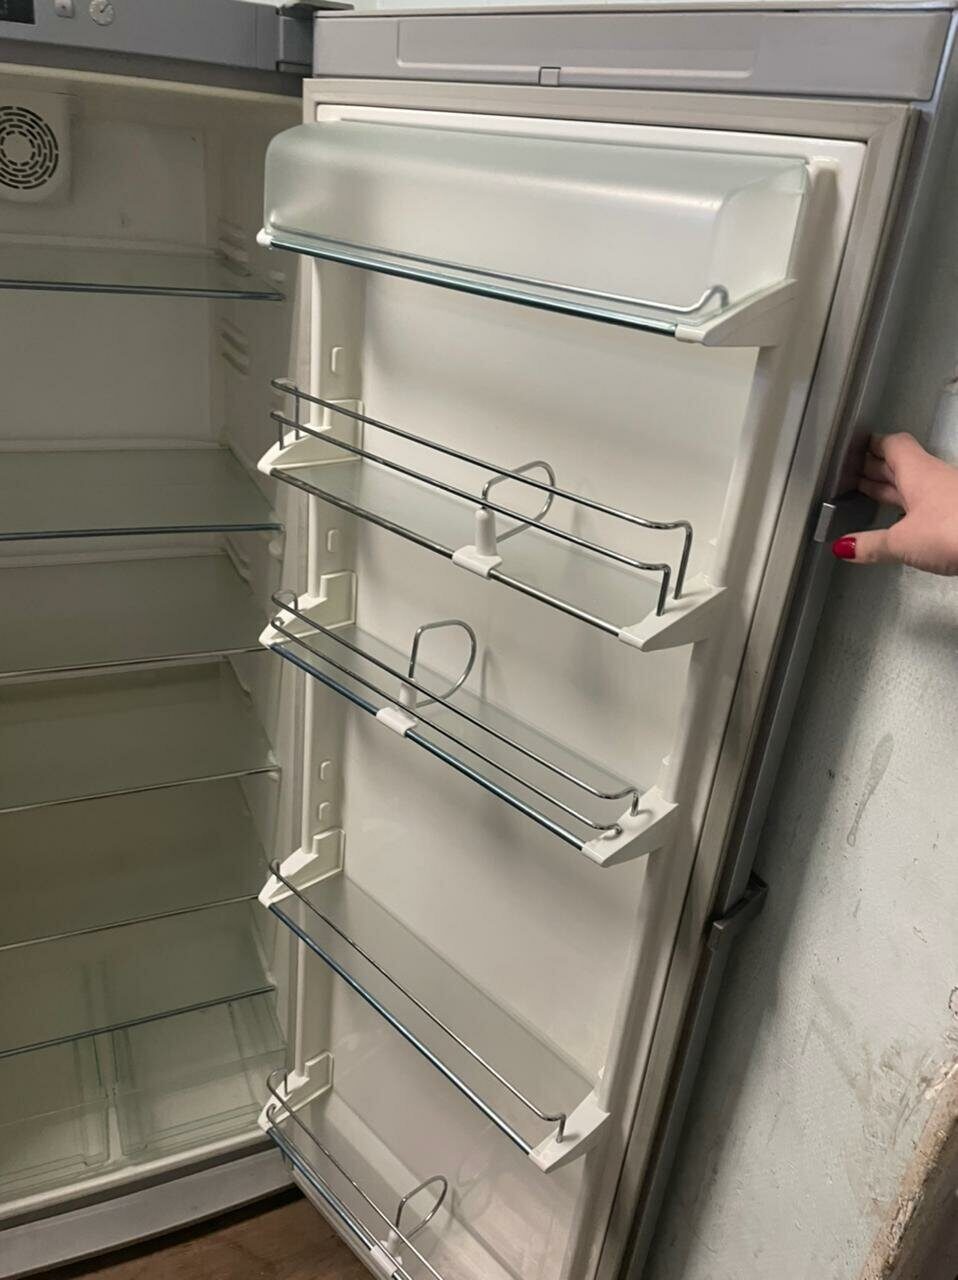 Холодильник под мебельный фасад